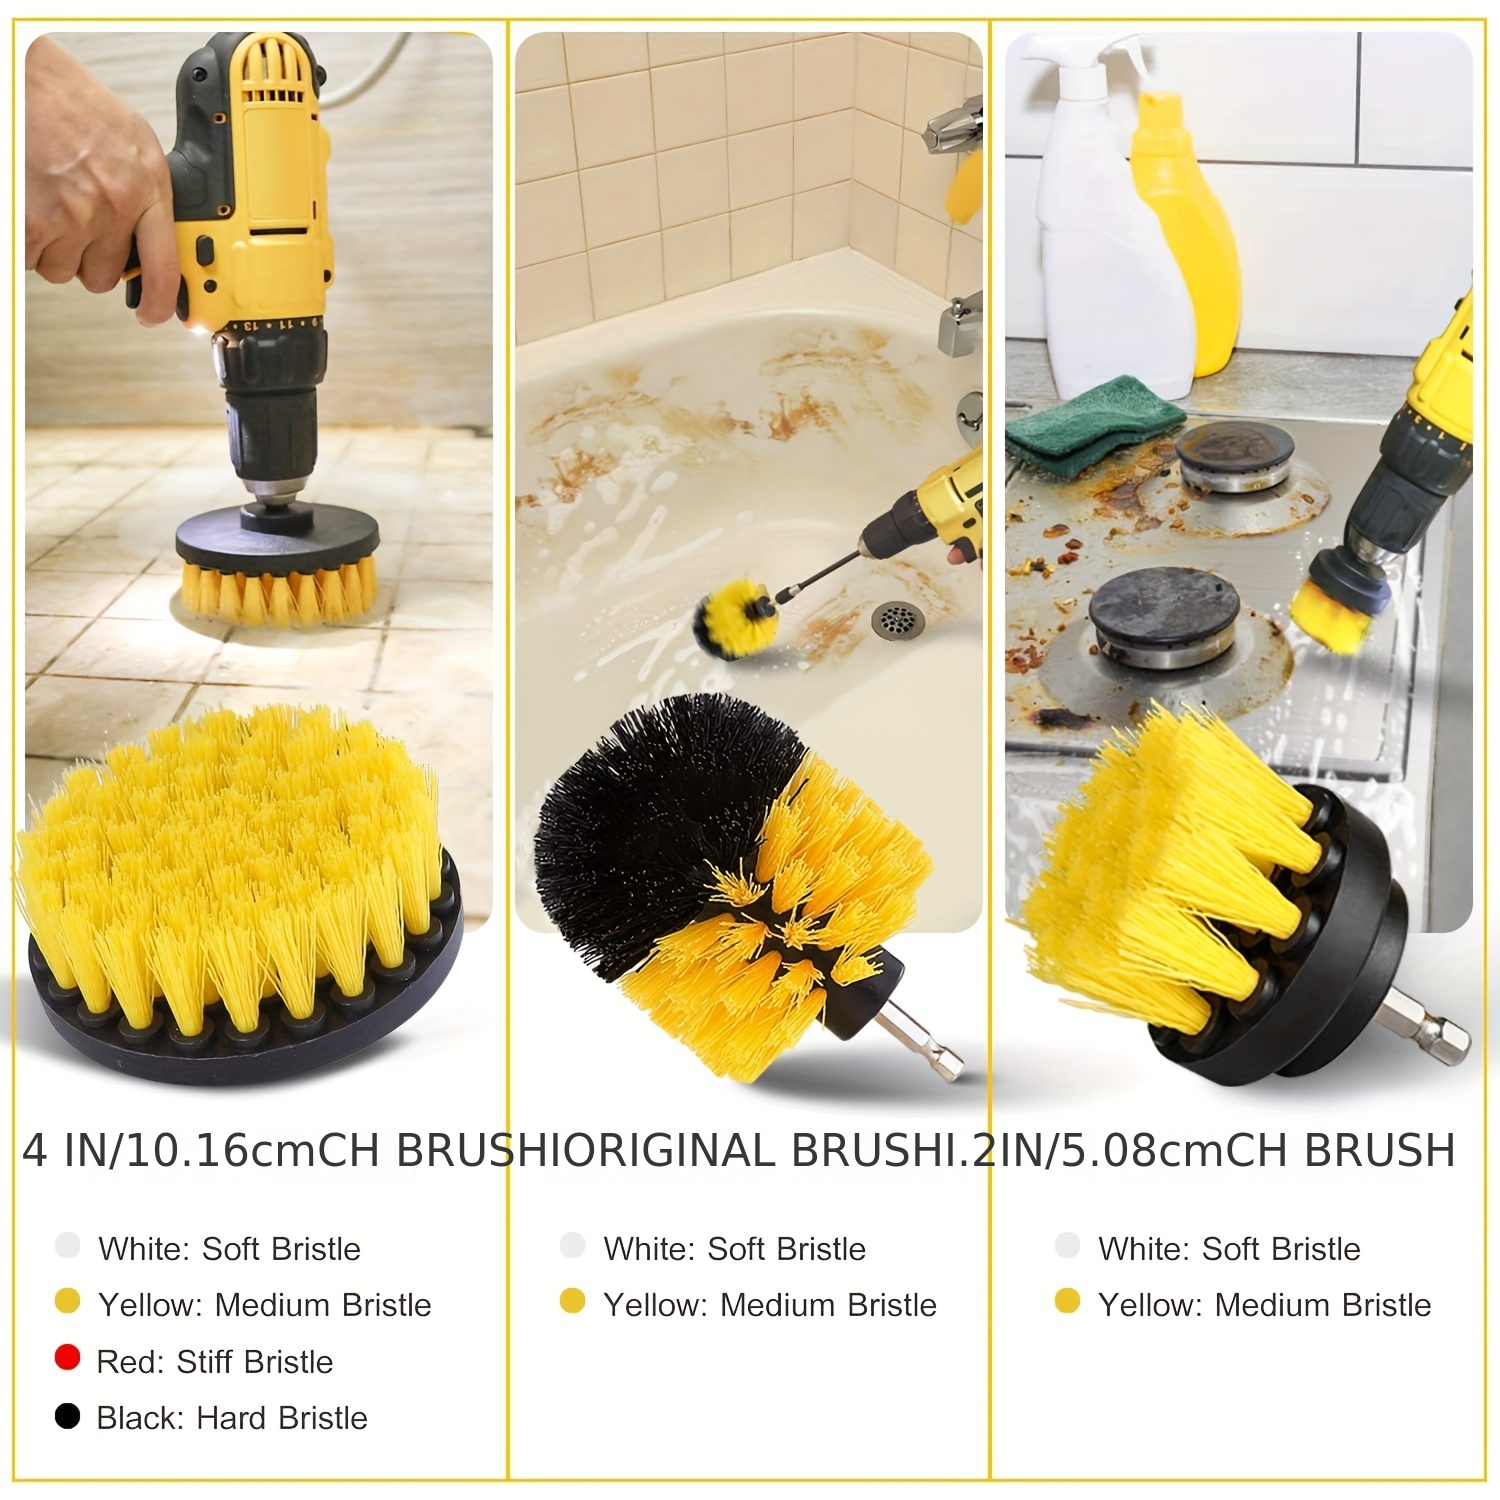 Cepillo eléctrico para limpiar duchas, tinas, y baldosas de Drillbrush